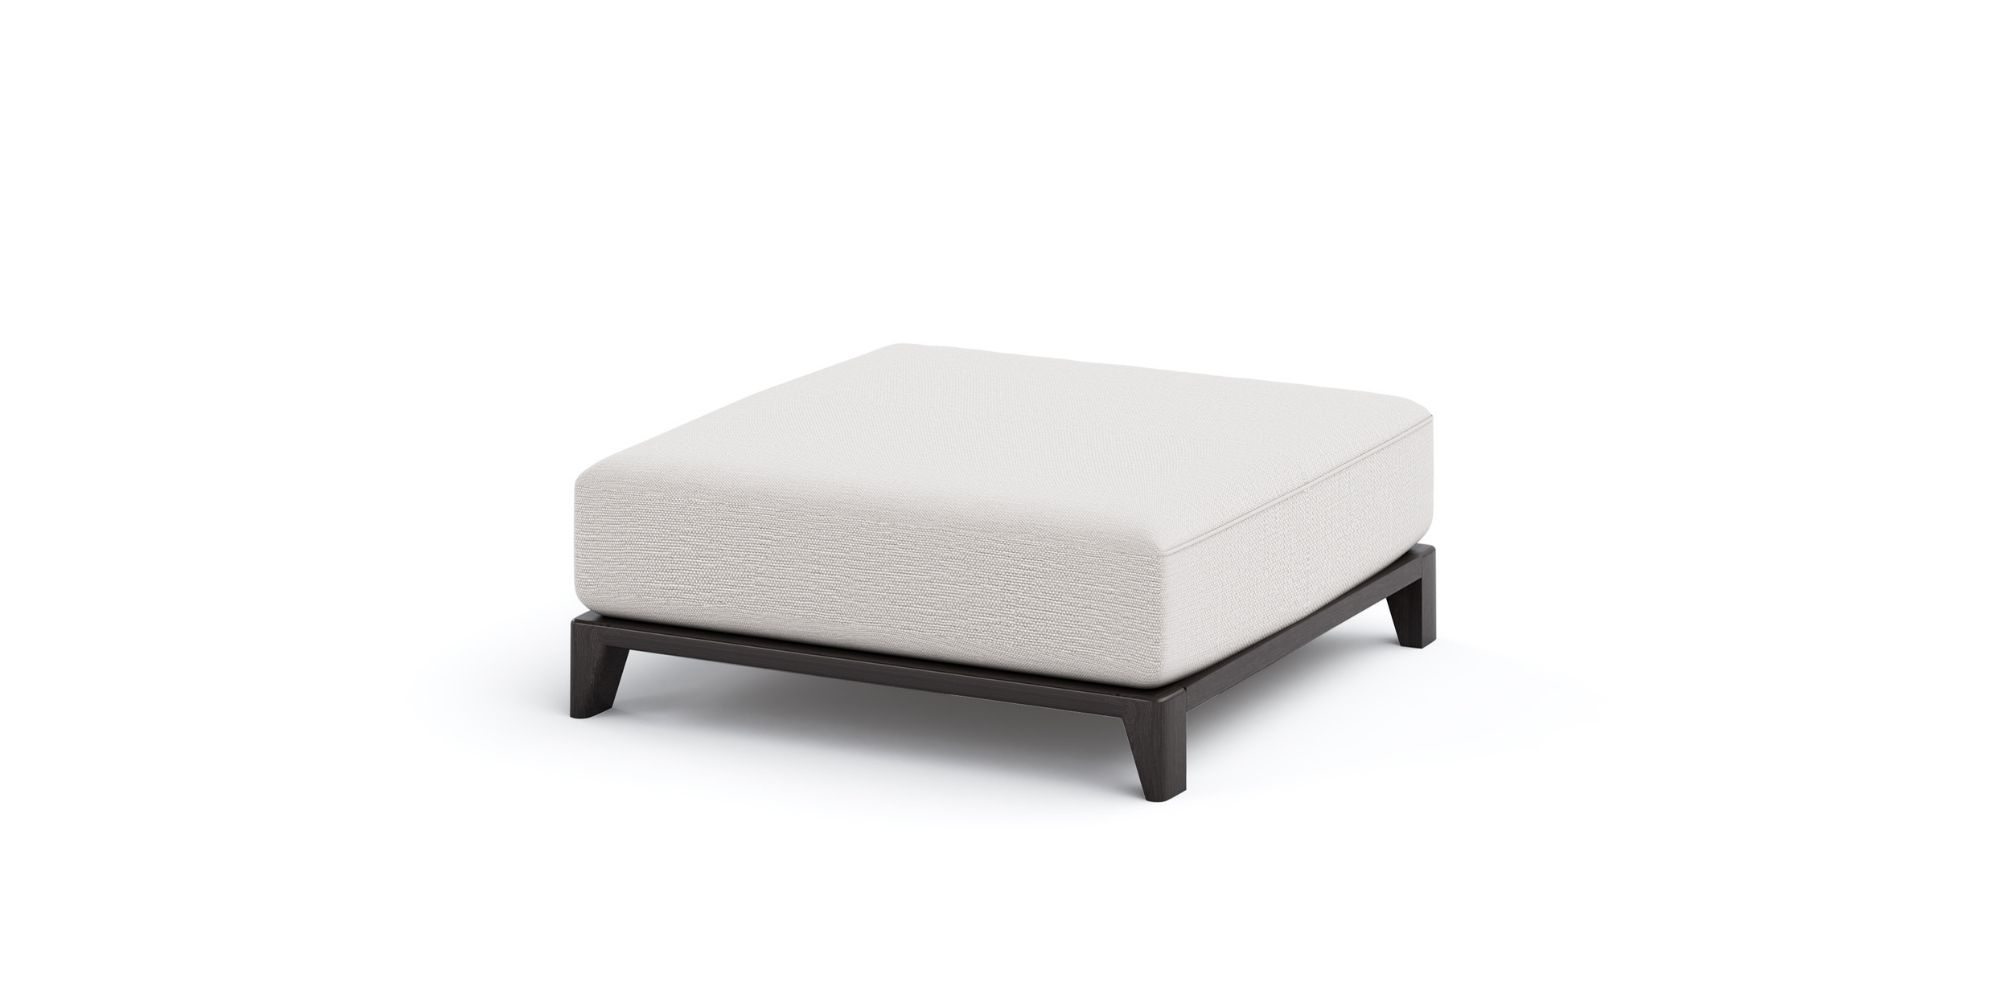 Coronet Modular Sofa in Outdoor Modular Sofas for Coronet collection